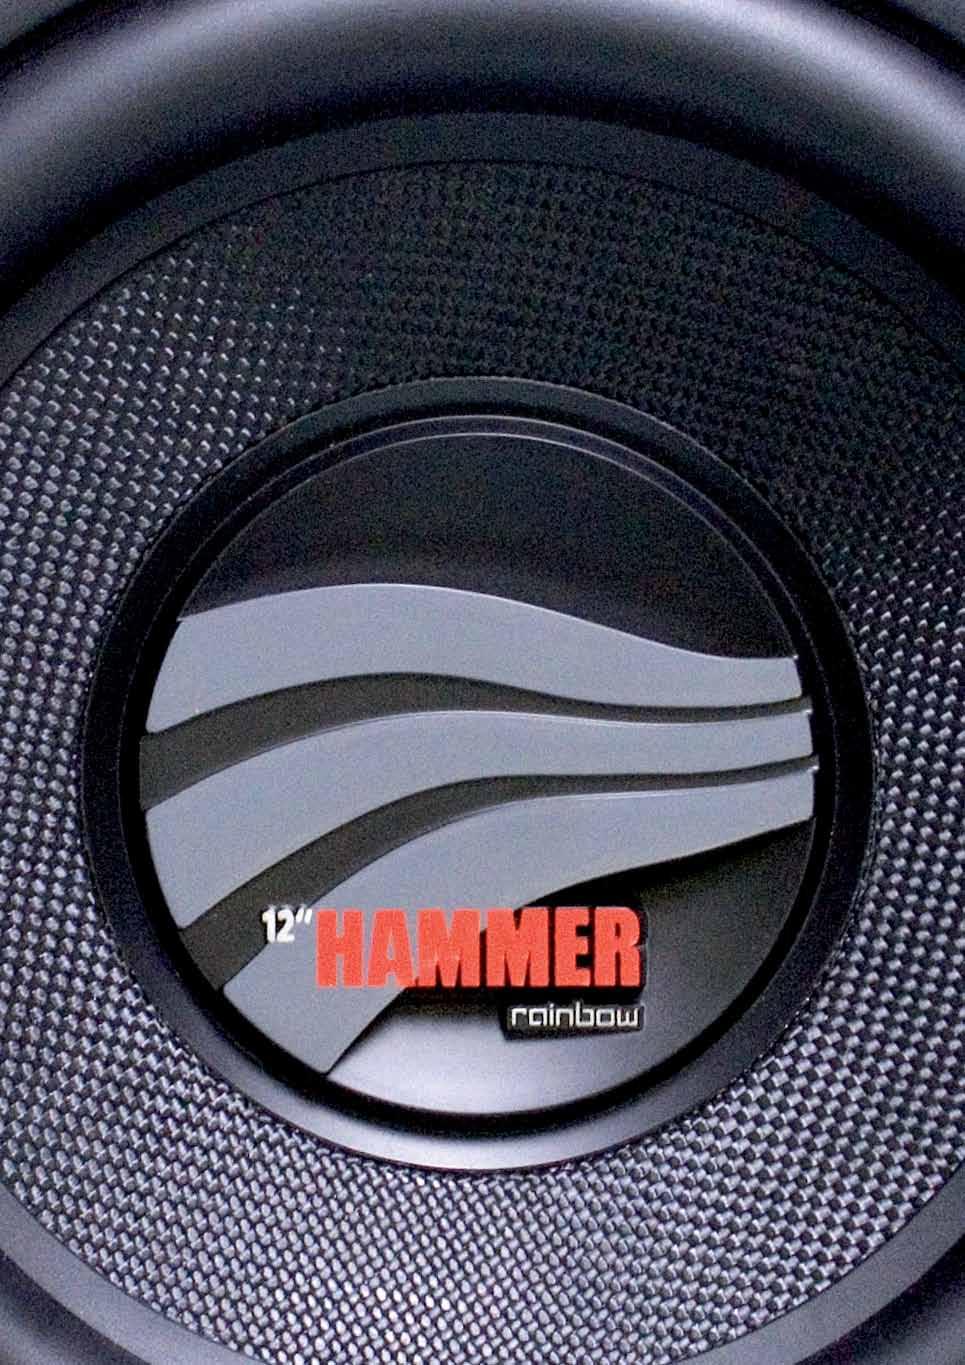 HAMMER SUB Die Subwoofer der Hammer Serie wurden mit sehr gutem Preis-Leistungs-Verhältnis entwickelt und stellen eine perfekte Mischung aus allen wichtigen Eigenschaften dar.